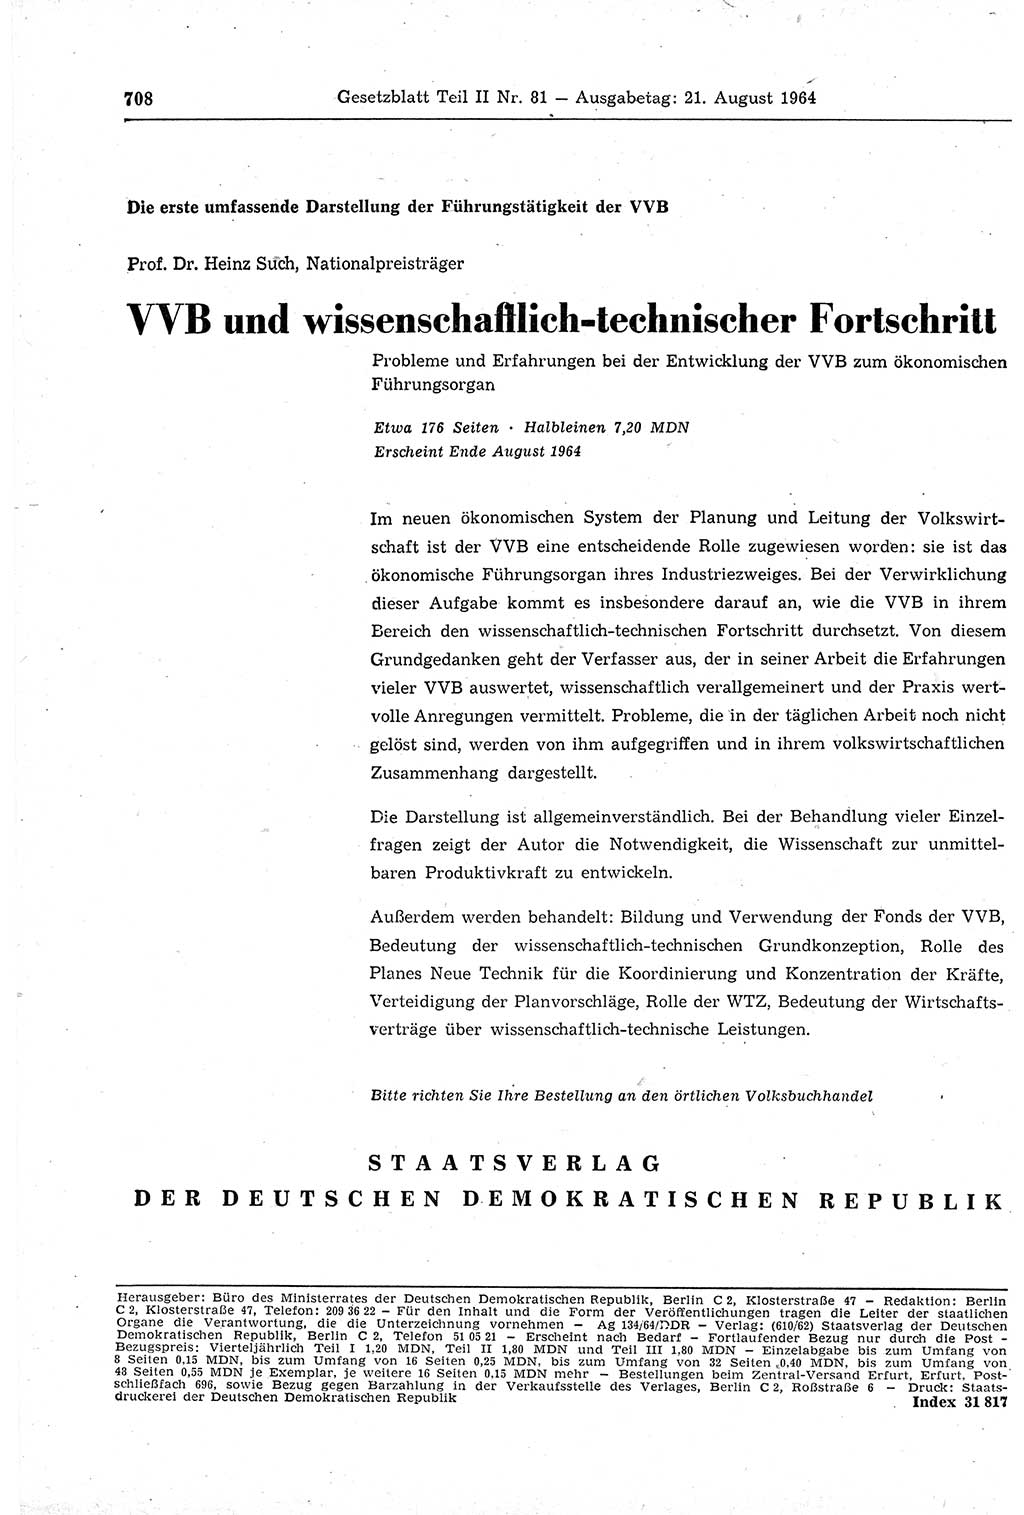 Gesetzblatt (GBl.) der Deutschen Demokratischen Republik (DDR) Teil ⅠⅠ 1964, Seite 708 (GBl. DDR ⅠⅠ 1964, S. 708)